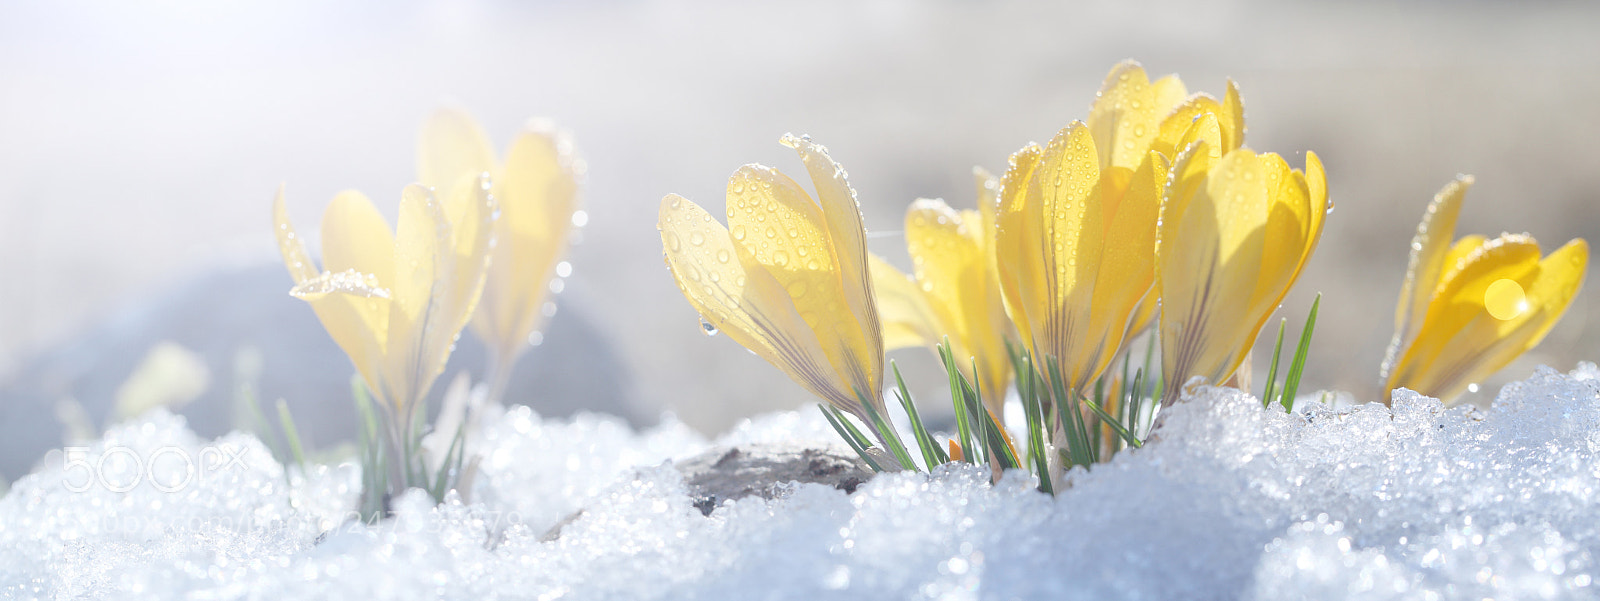 Canon EOS 5D Mark II sample photo. Flowers grow under snow photography